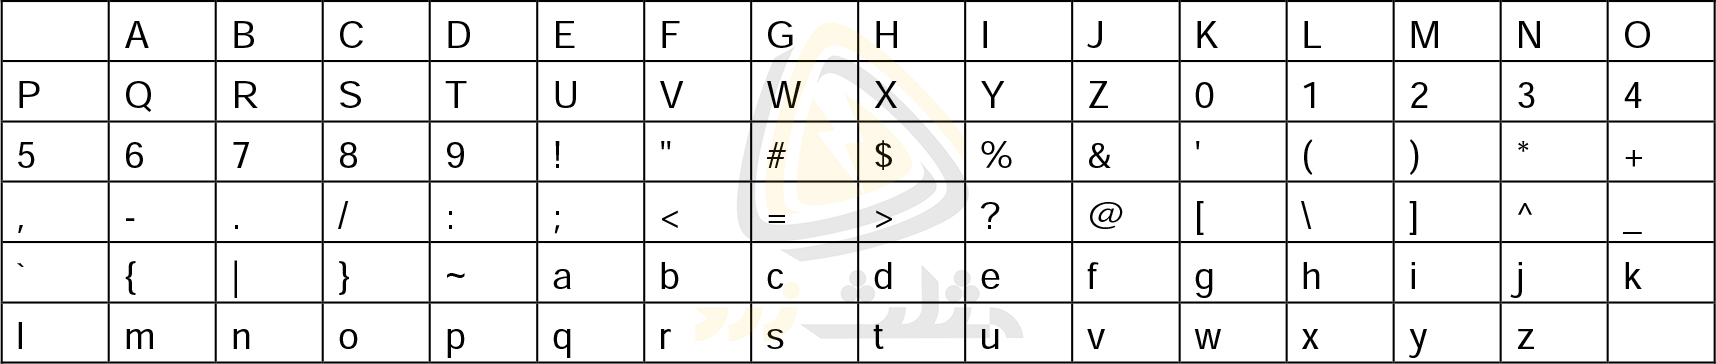 جدول کاراکترهای قابل استفاده در نام برنامه لوگو 8